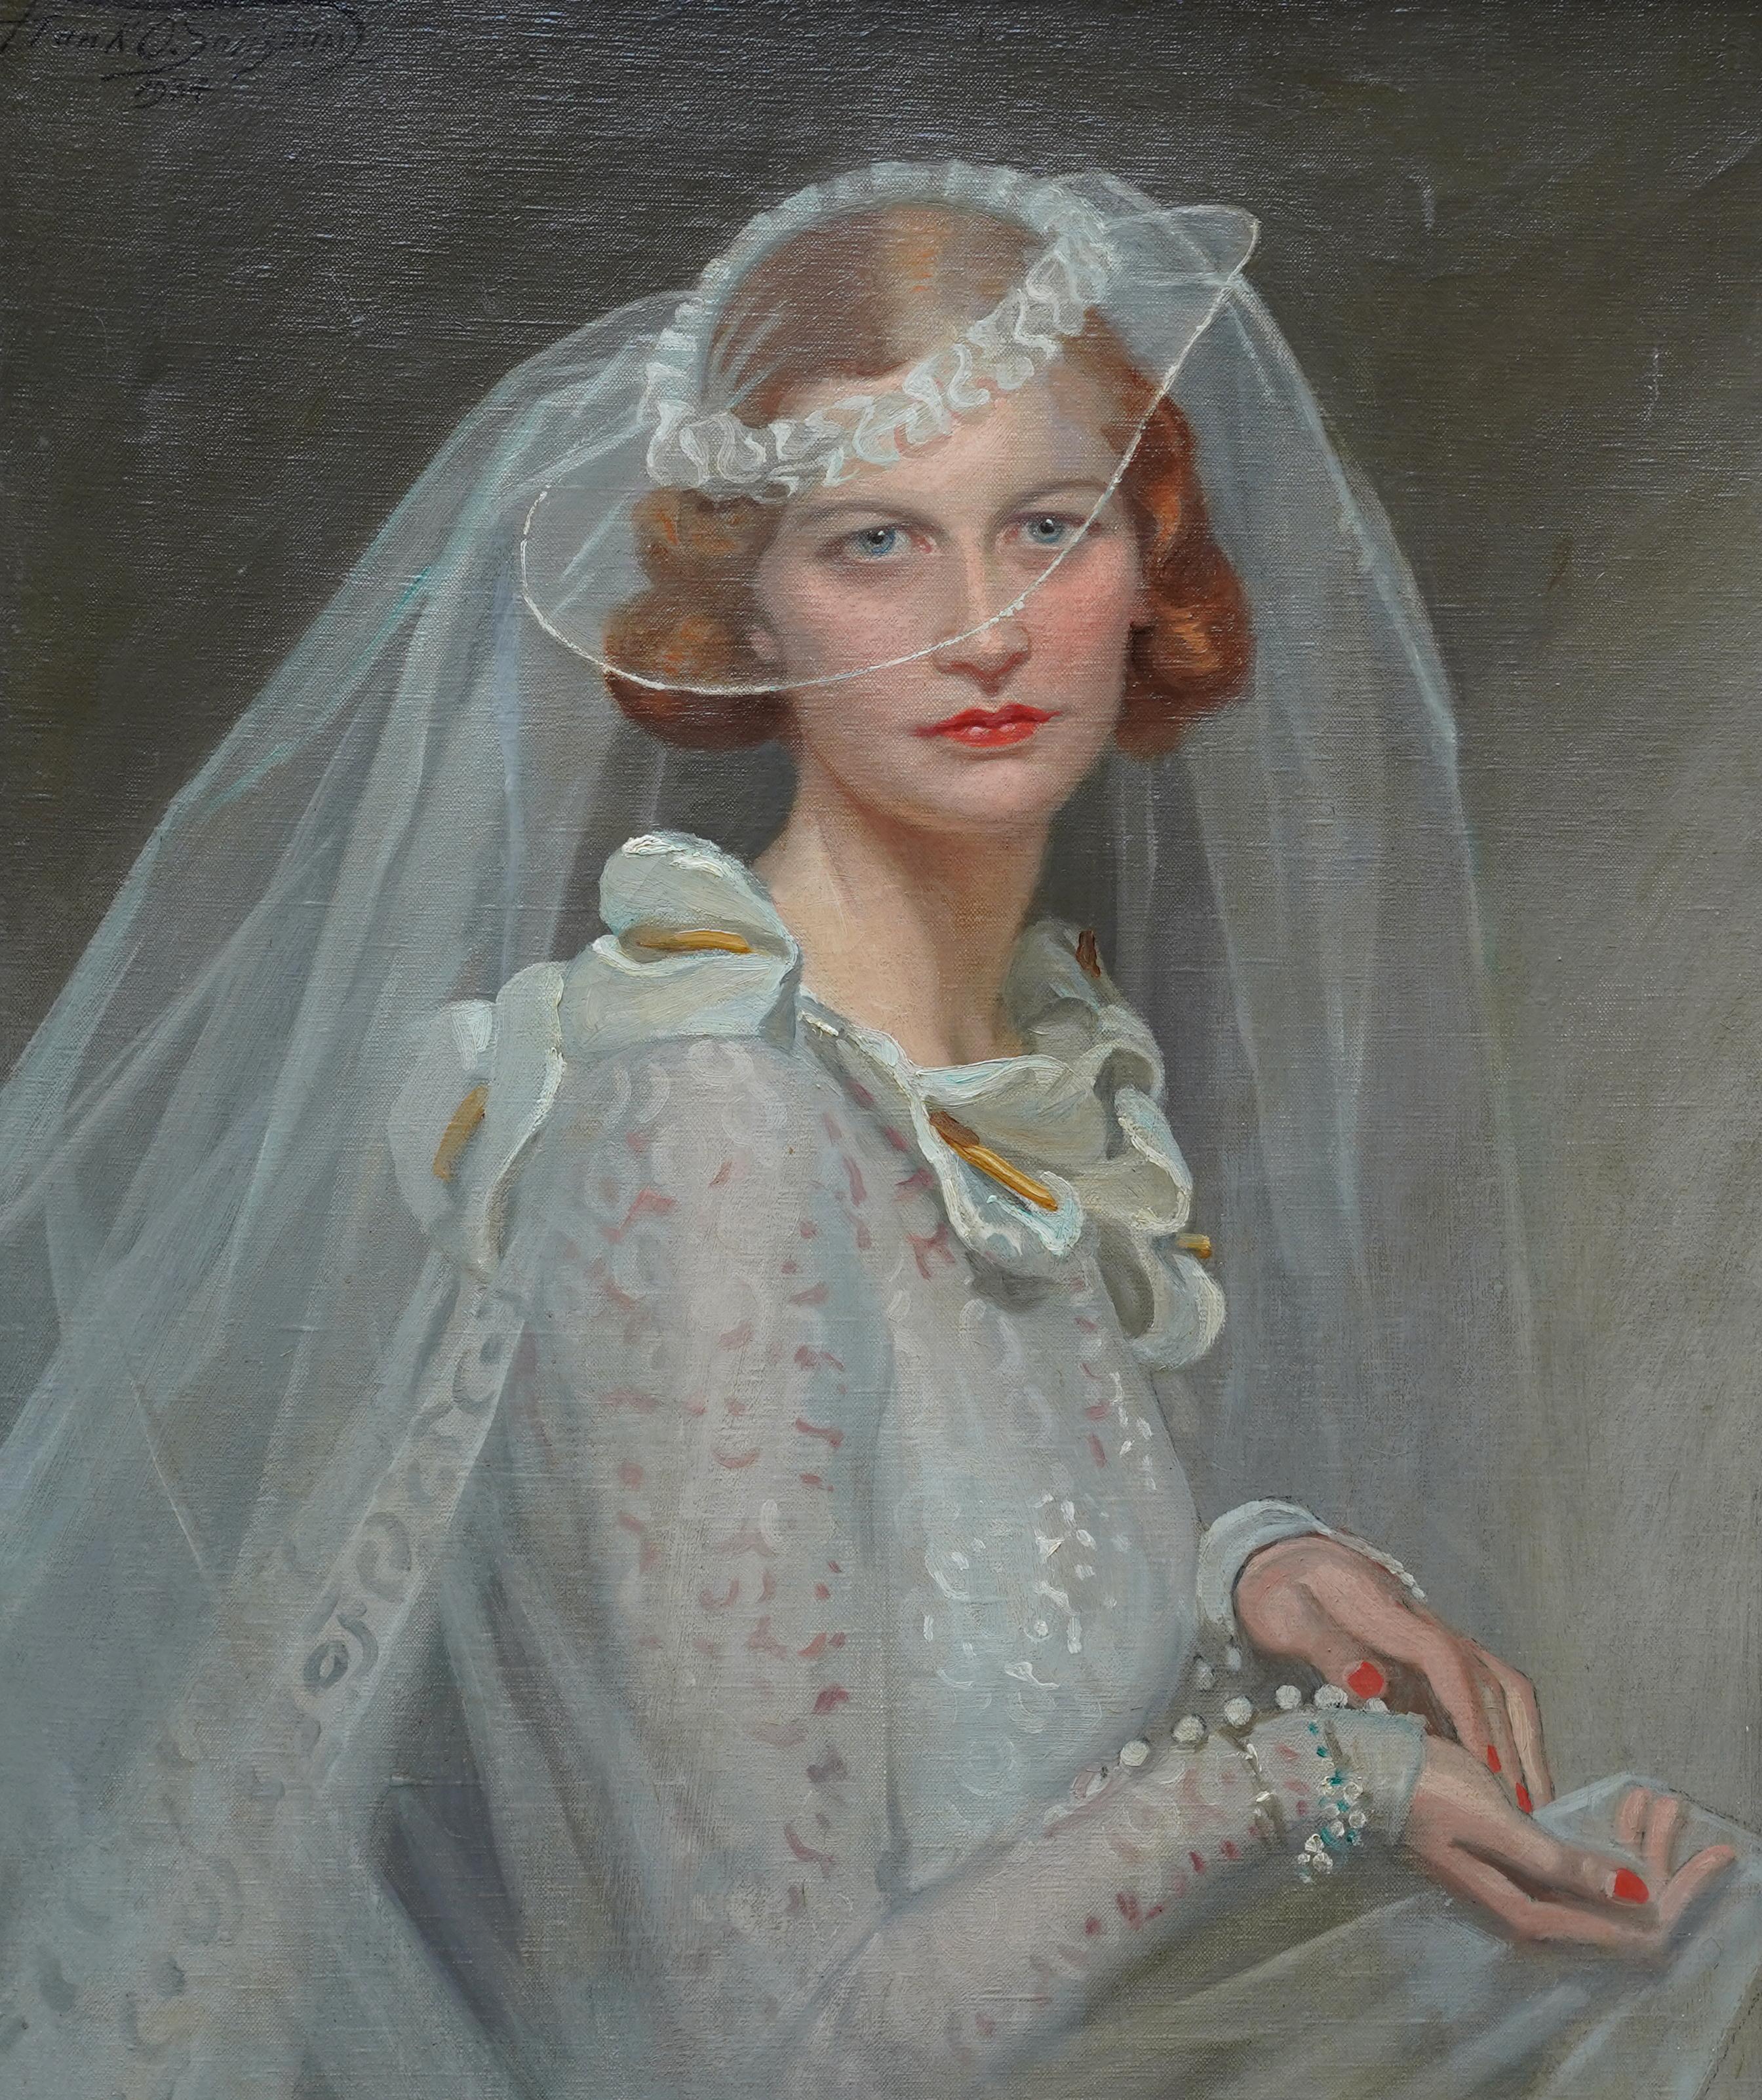 Portrait of a Bride - British 1934 Romantic art female portrait oil painting - Painting by Frank Owen Salisbury